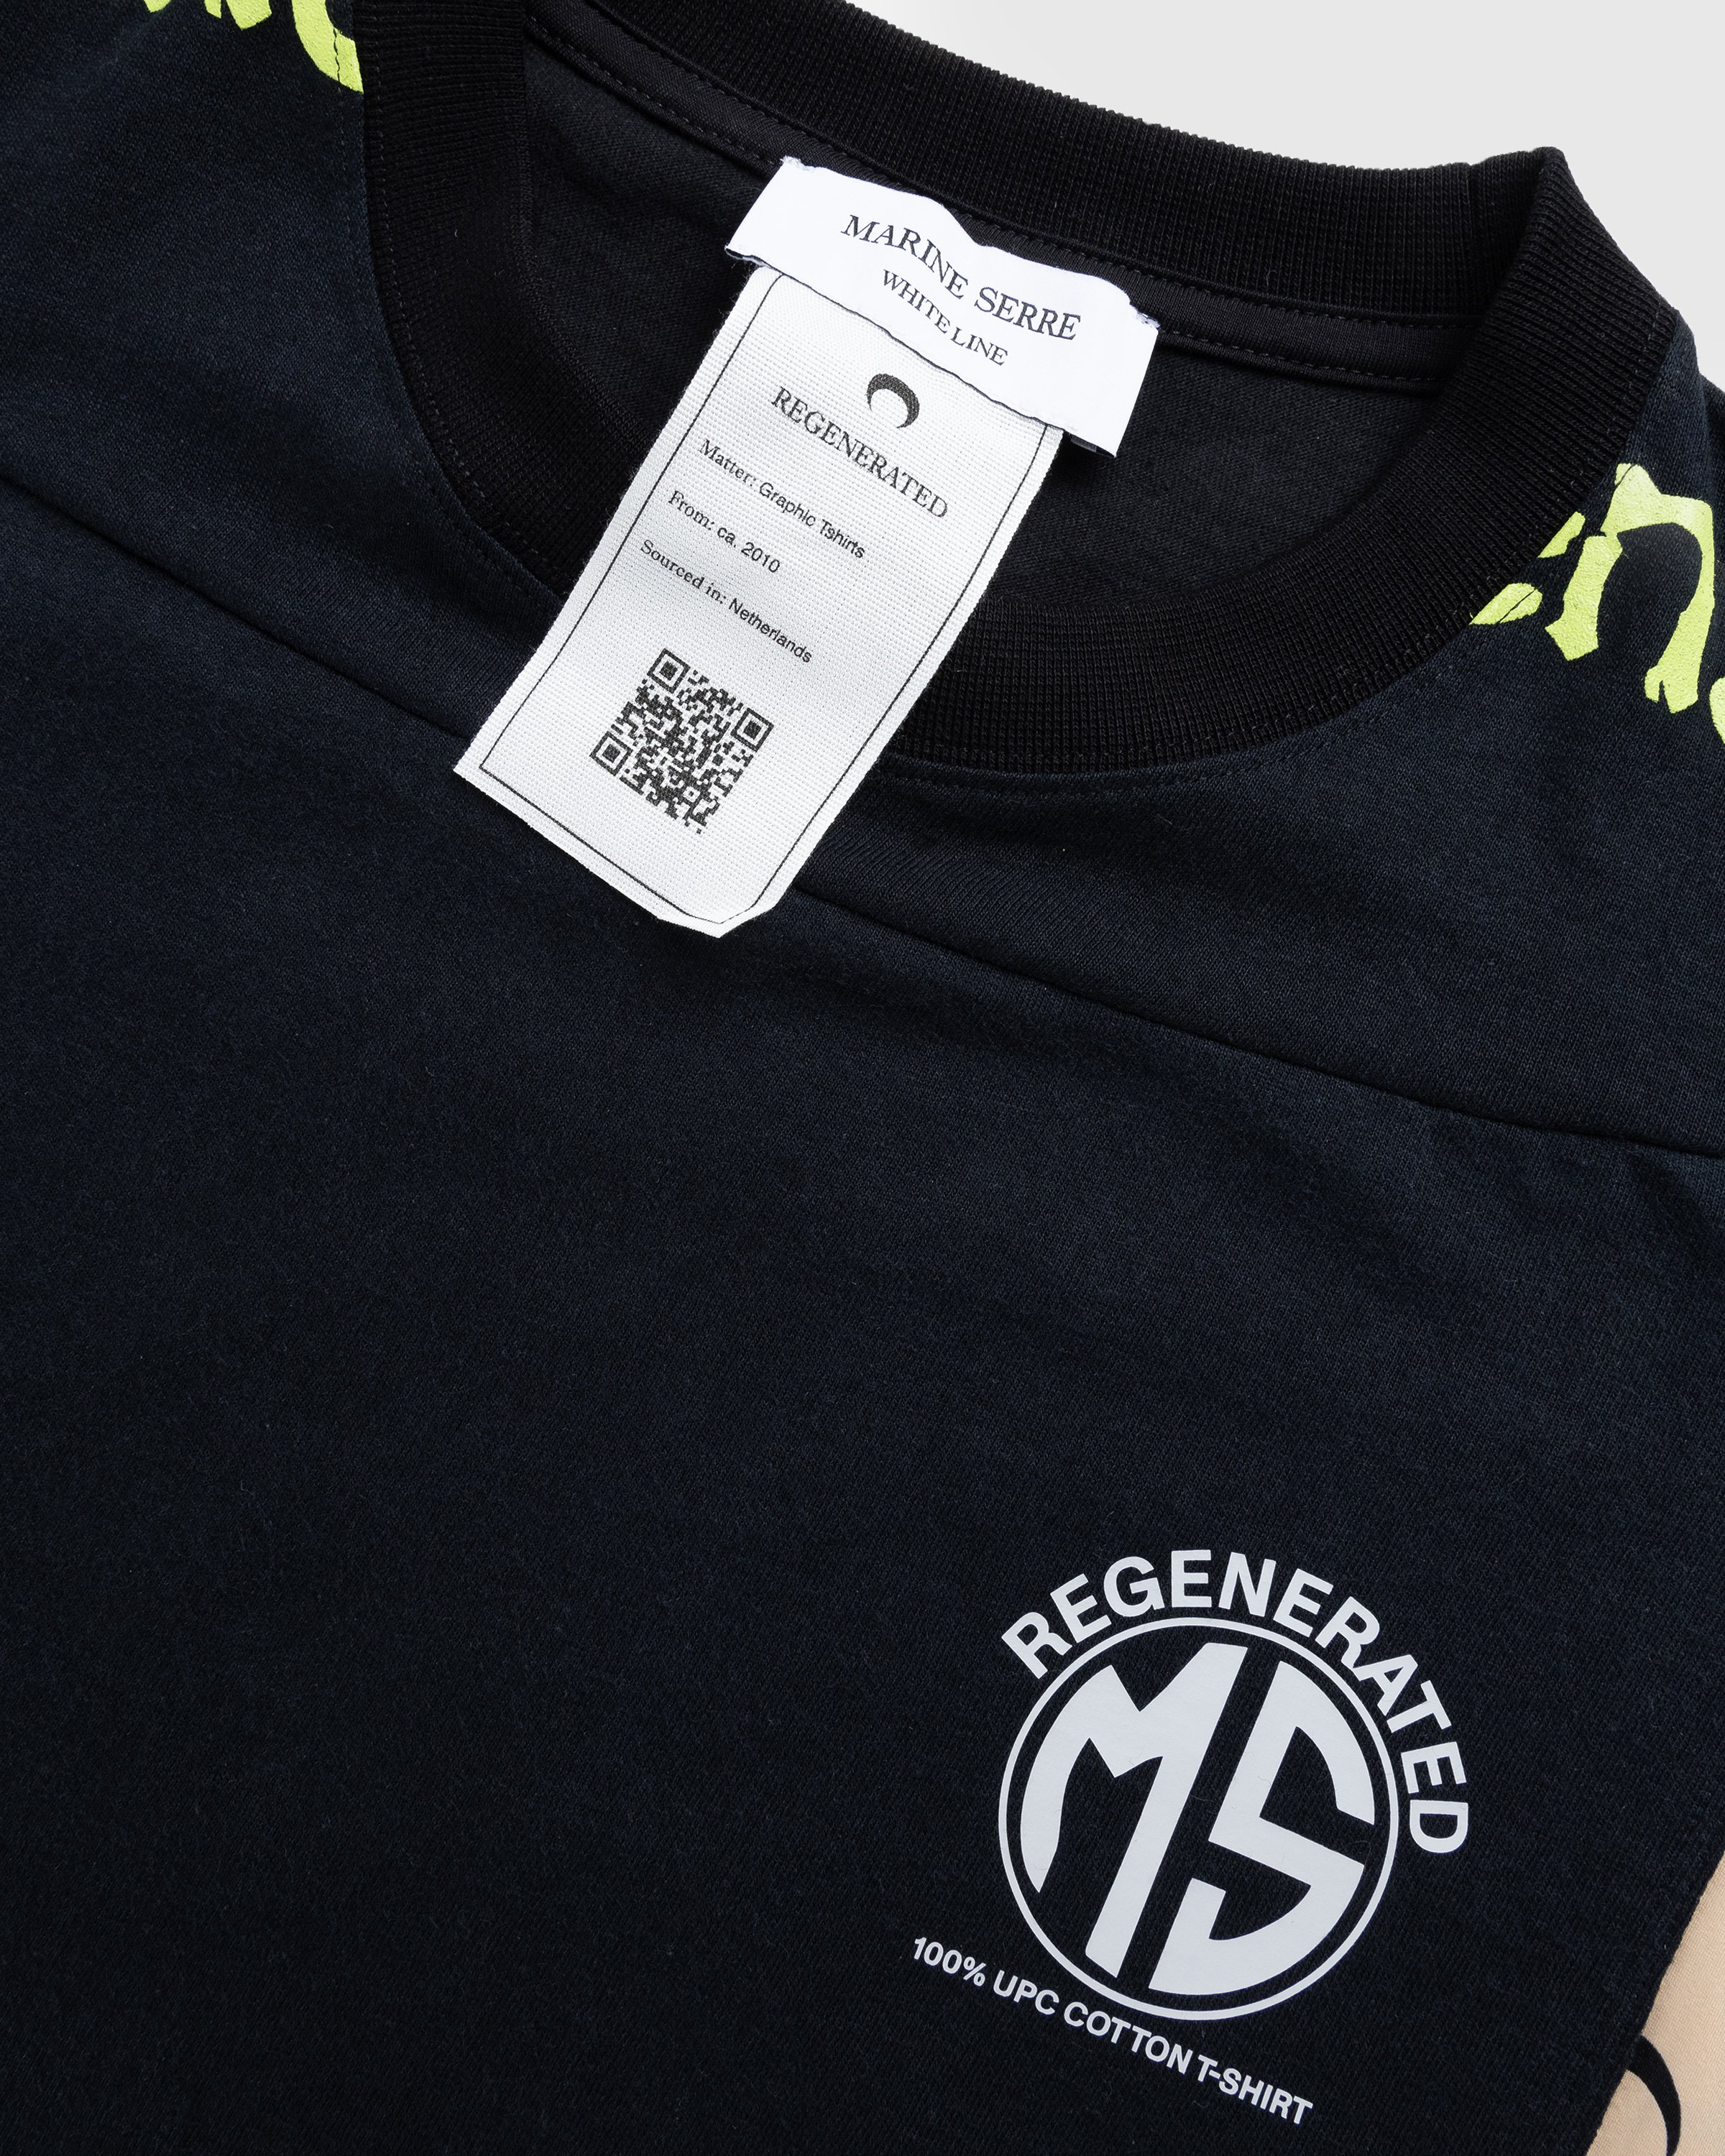 Marine Serre - Regenerated Graphic T-Shirt Black - Clothing - Black - Image 5